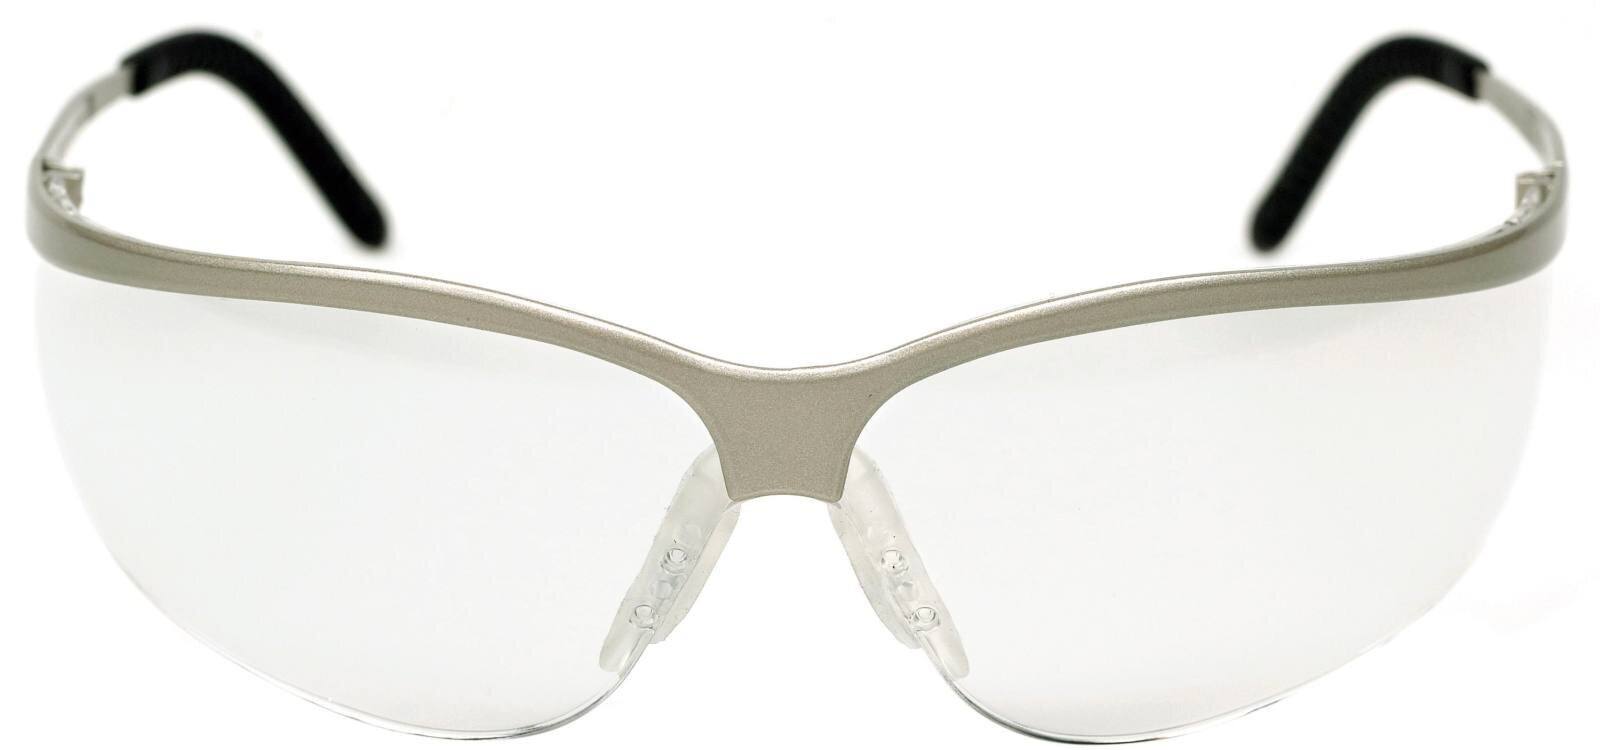 3M Gafas de protección Metaliks Sport AS/AF/UV, PC, transparentes, montura agradable a la piel, patillas engomadas MetSp0Si